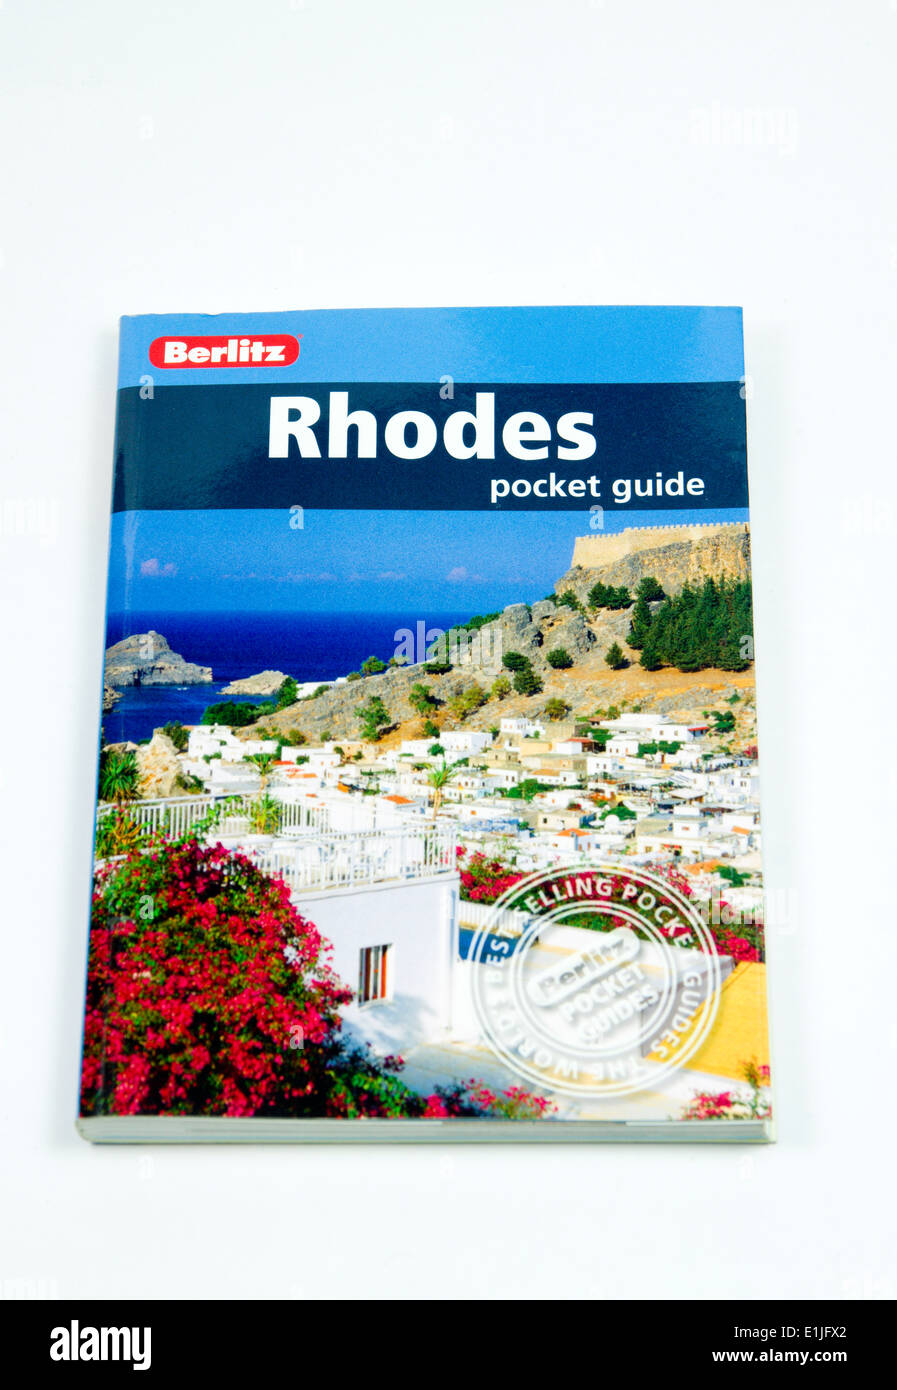 Marque Berlitz guide pour l'île de Rhodes, Grèce. Banque D'Images